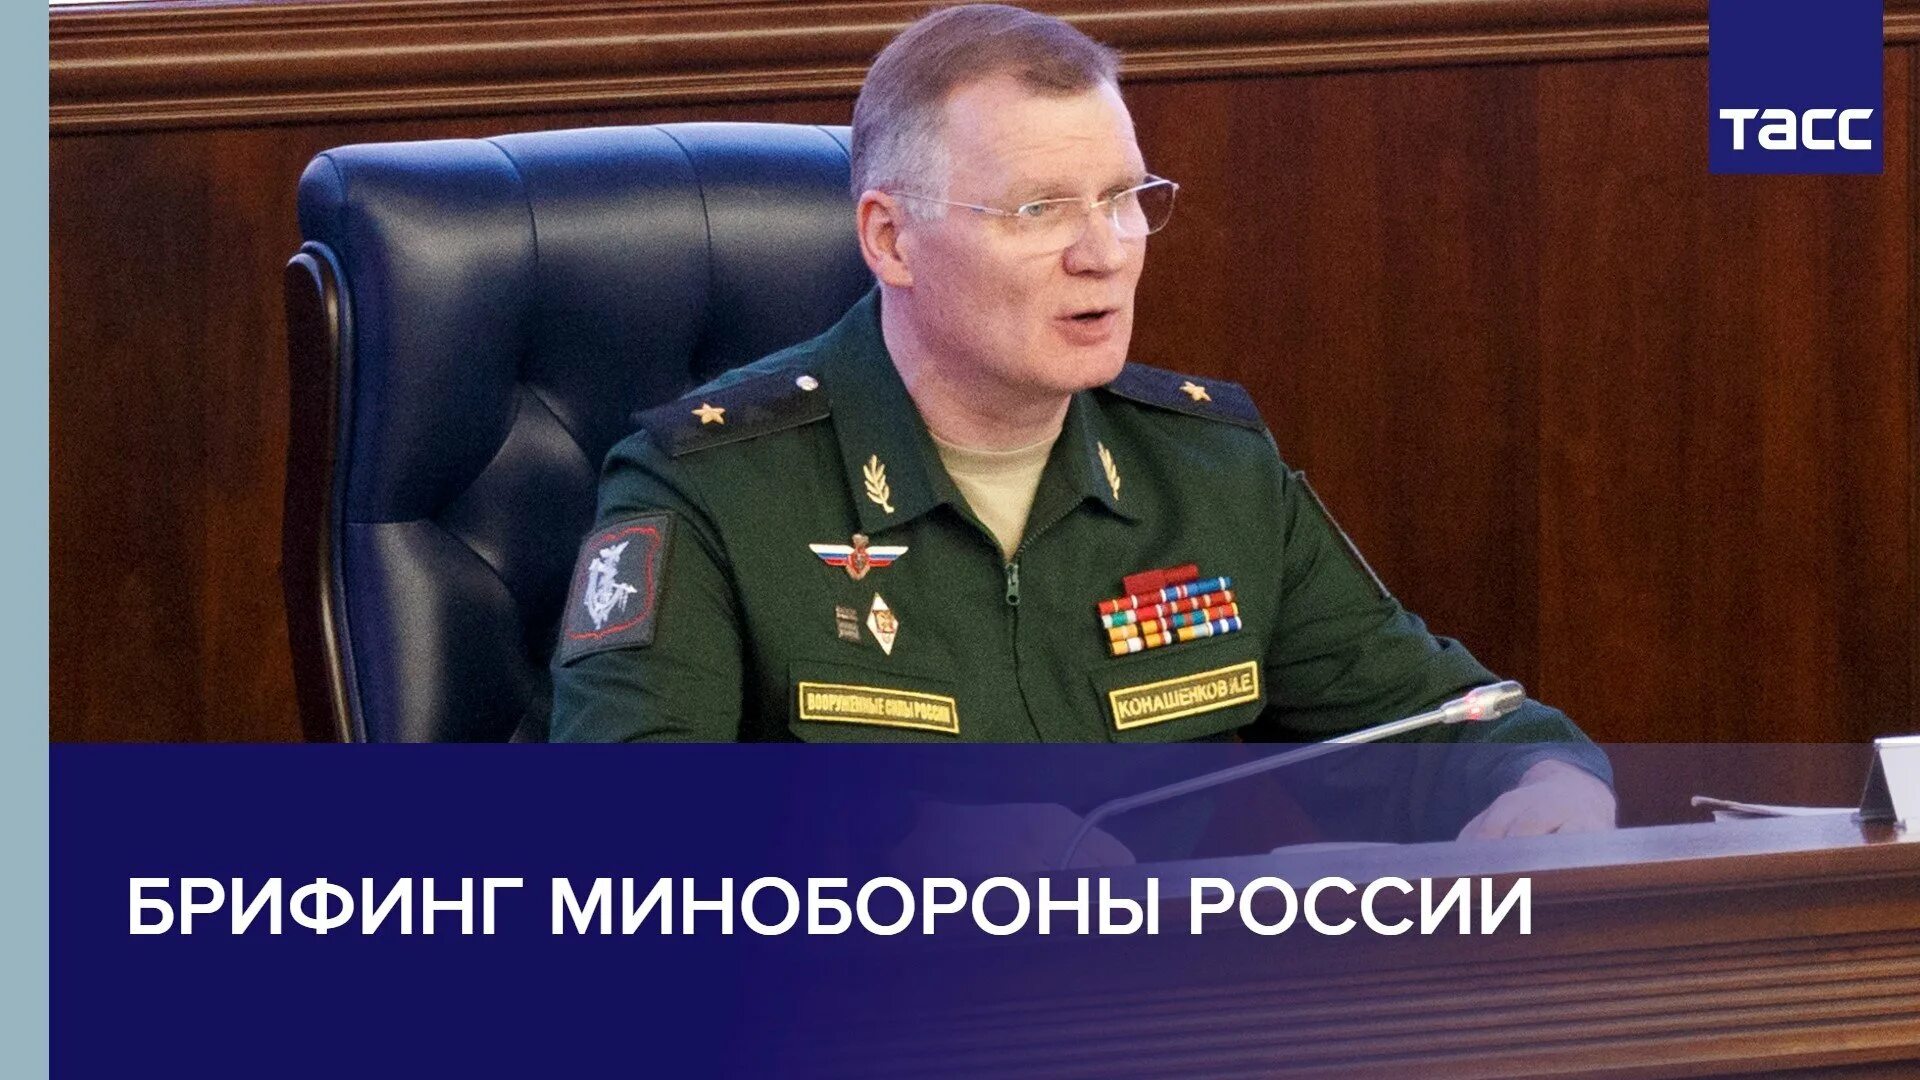 Последний брифинг министерства обороны россии